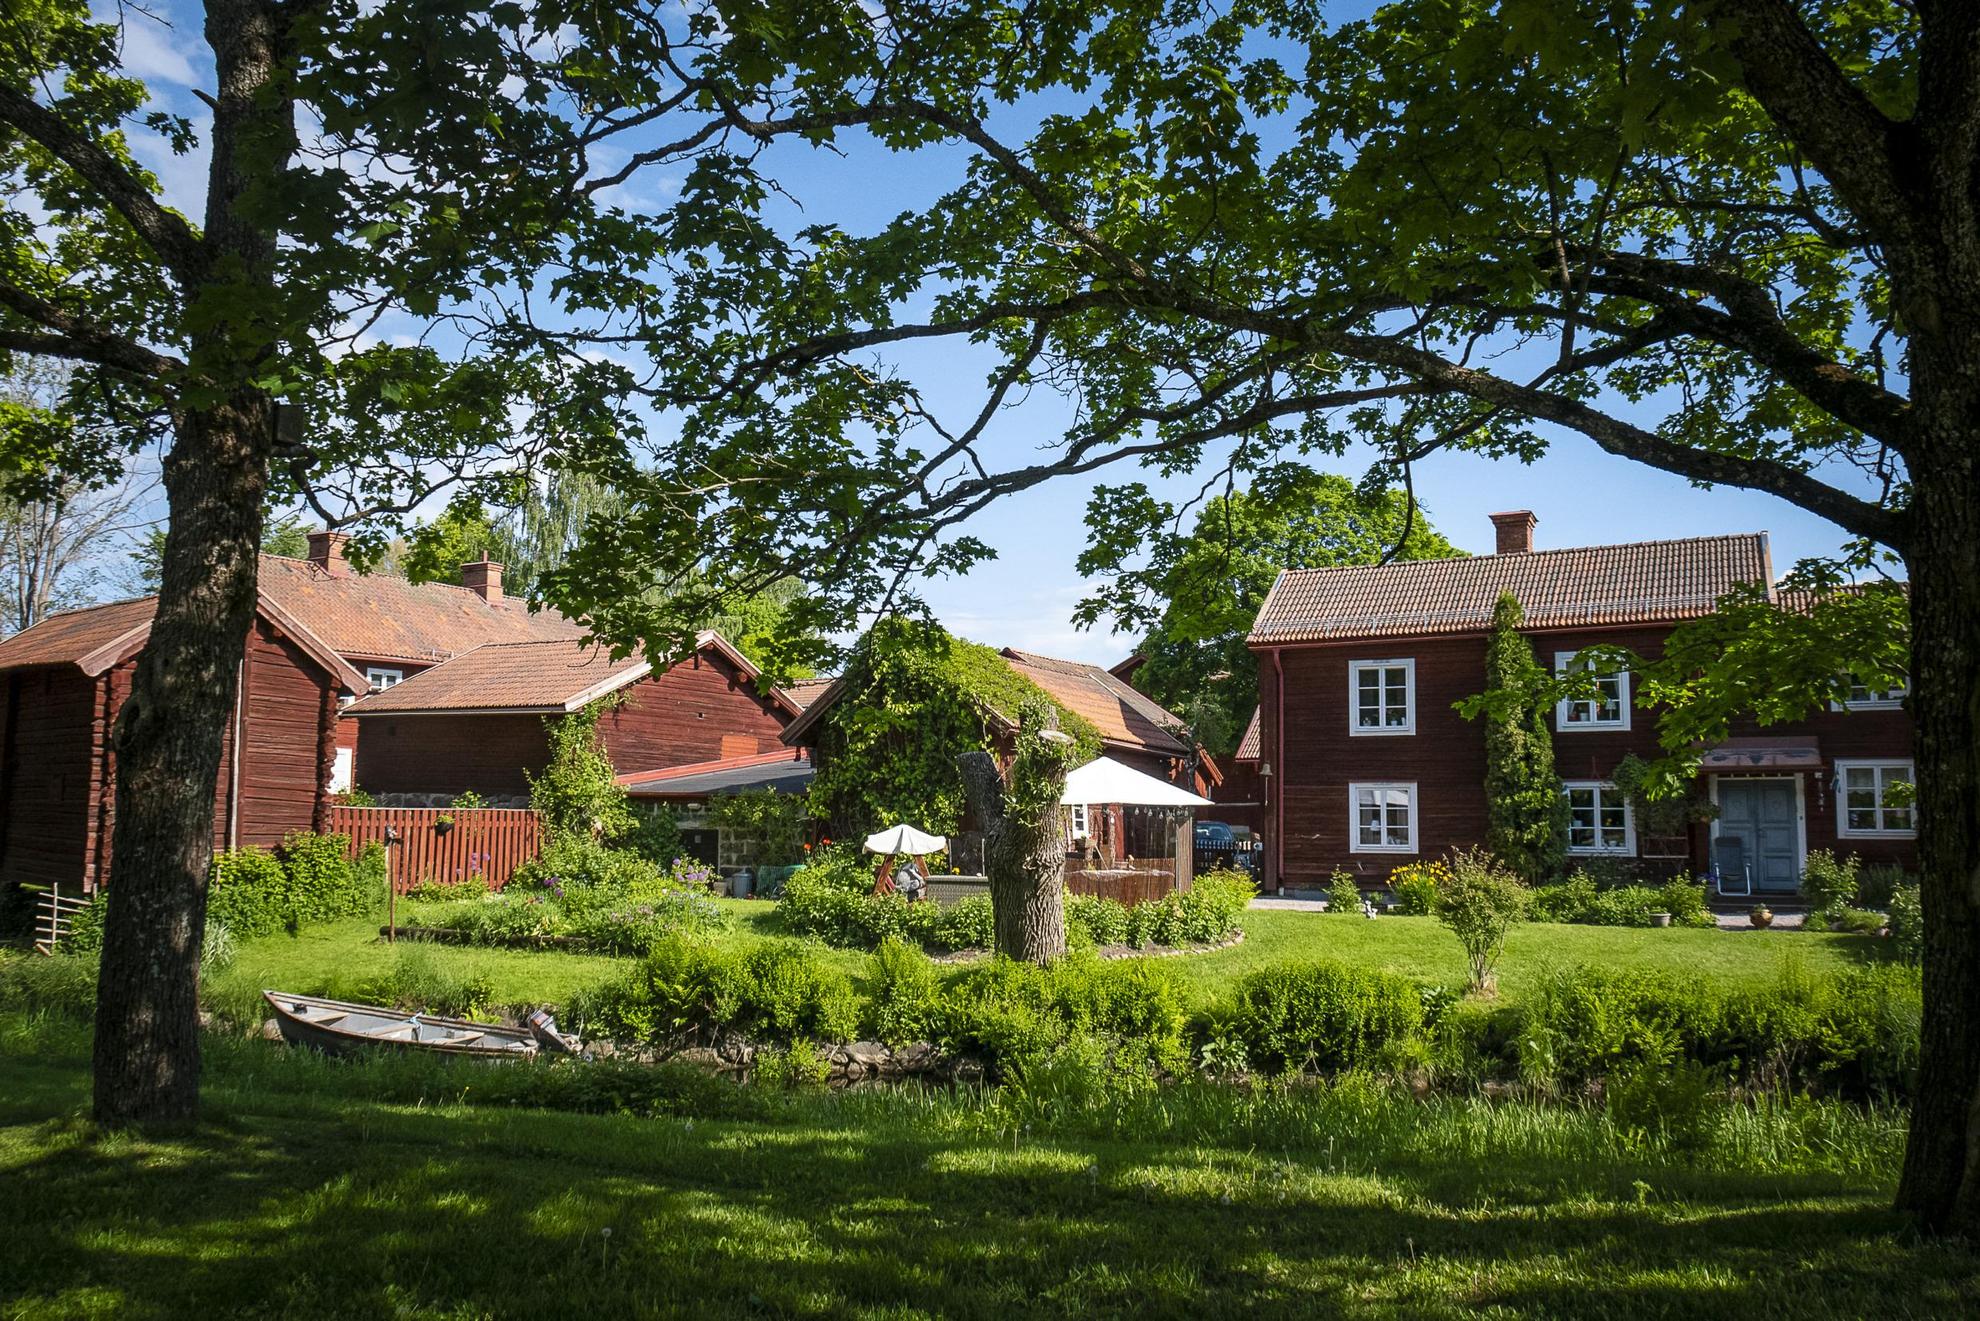 Plusieurs maisons traditionnelles peintes avec la célèbre peinture Falu Rödfärg et entourées de verdure.